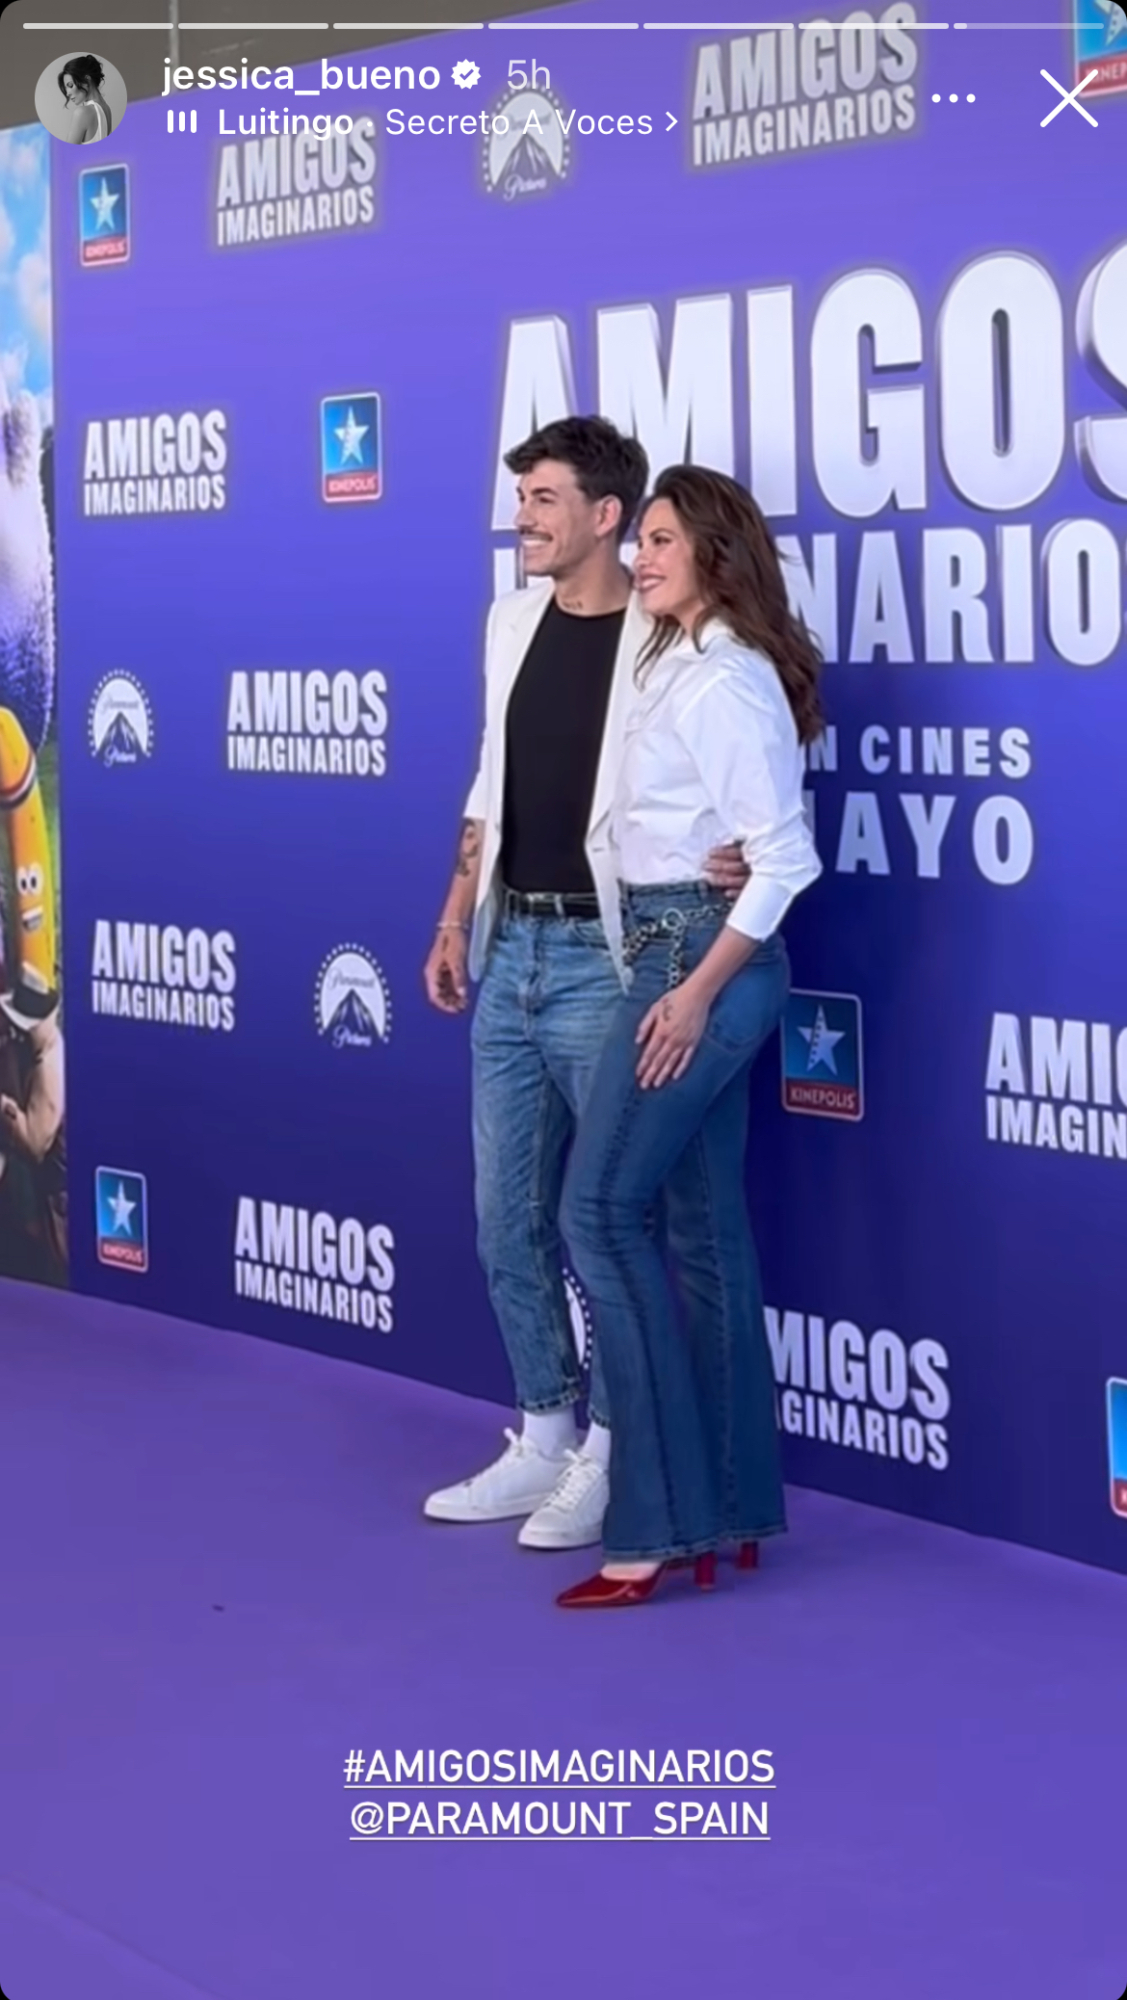 Jessica Bueno y Luitingo juntos en la premiere de 'Amigos imaginarios'